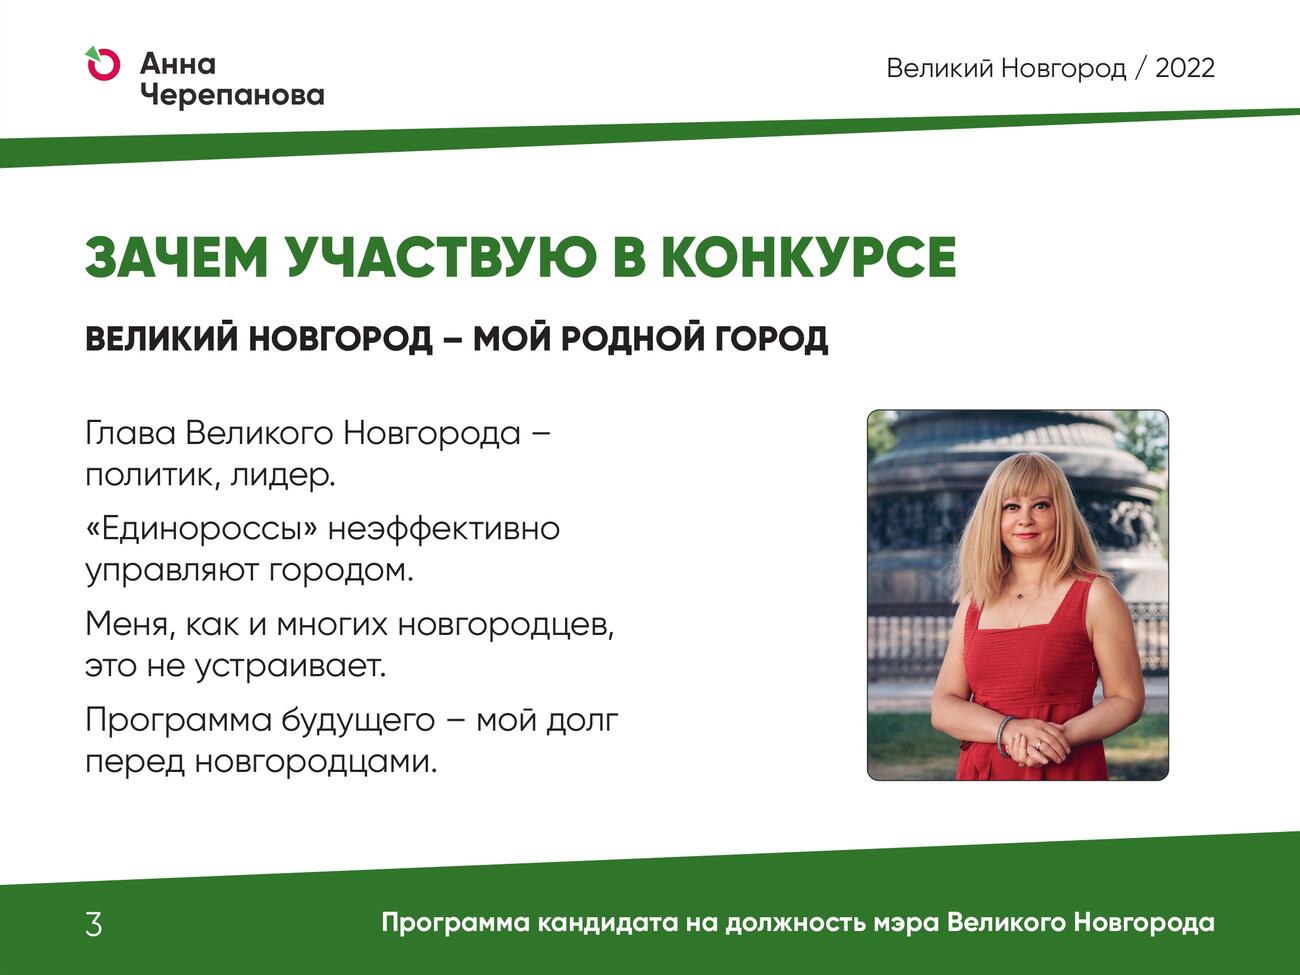 Презентация программы Анны Черепановой